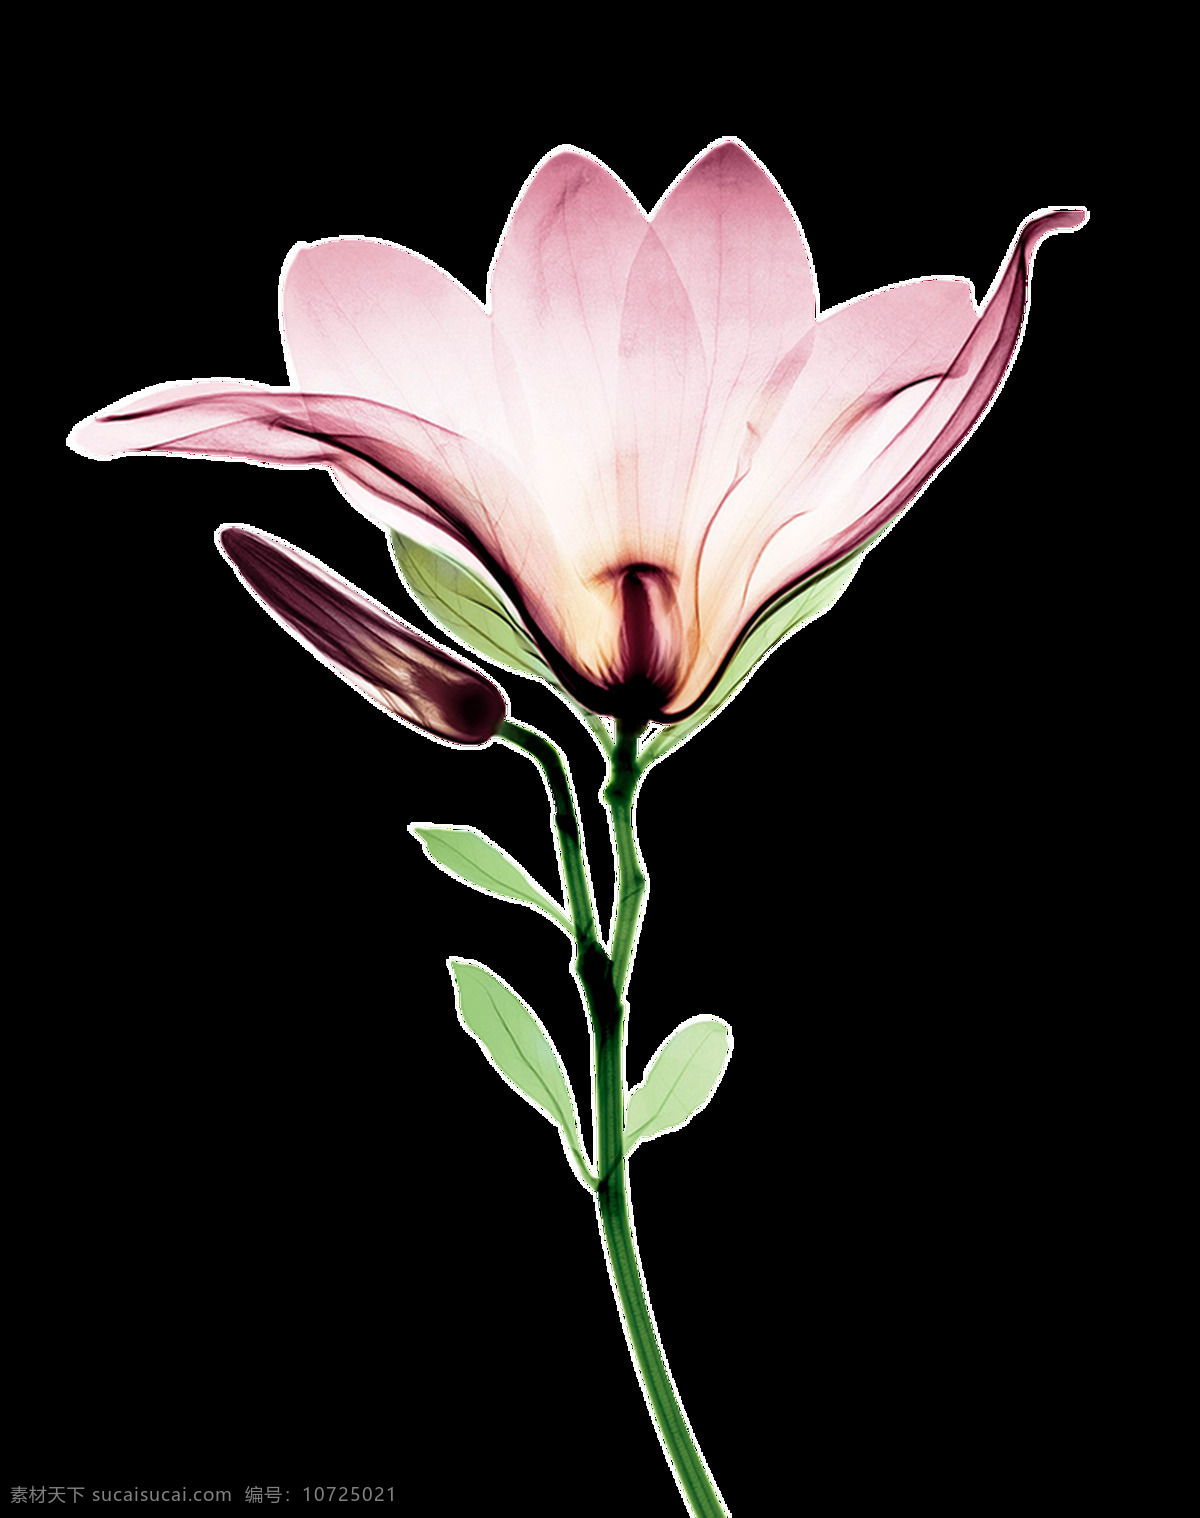 盛开 水彩 花卉 透明 海报设计装饰 抠图专用 设计素材 淘宝素材 透明素材 装饰 装饰图案